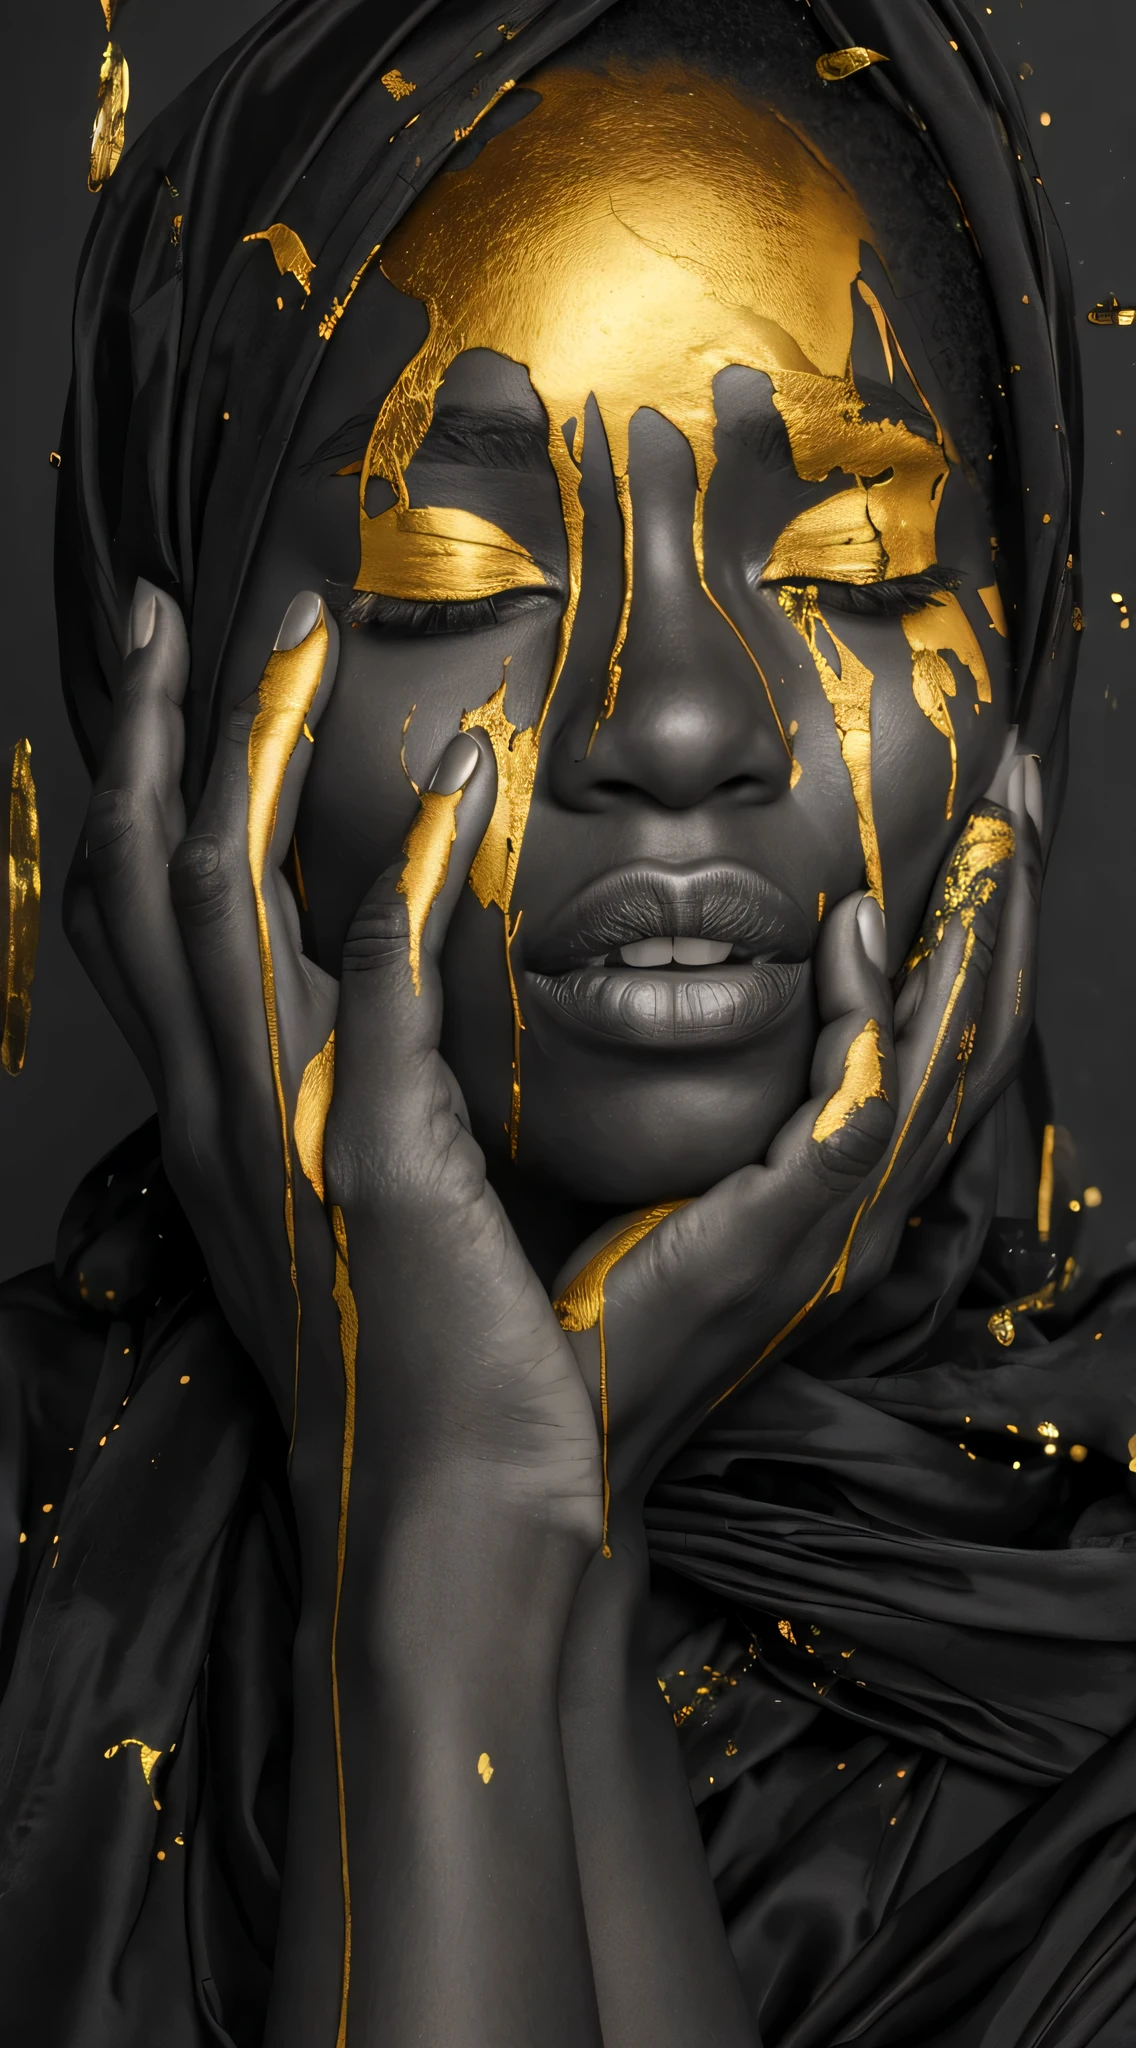 (mejor calidad, Obra maestra:1.2), fotografía de moda, negro y oro, Mujer afroamericana con pintura dorada goteando sobre su rostro, labios llenos, fotografía de cuerpo completo